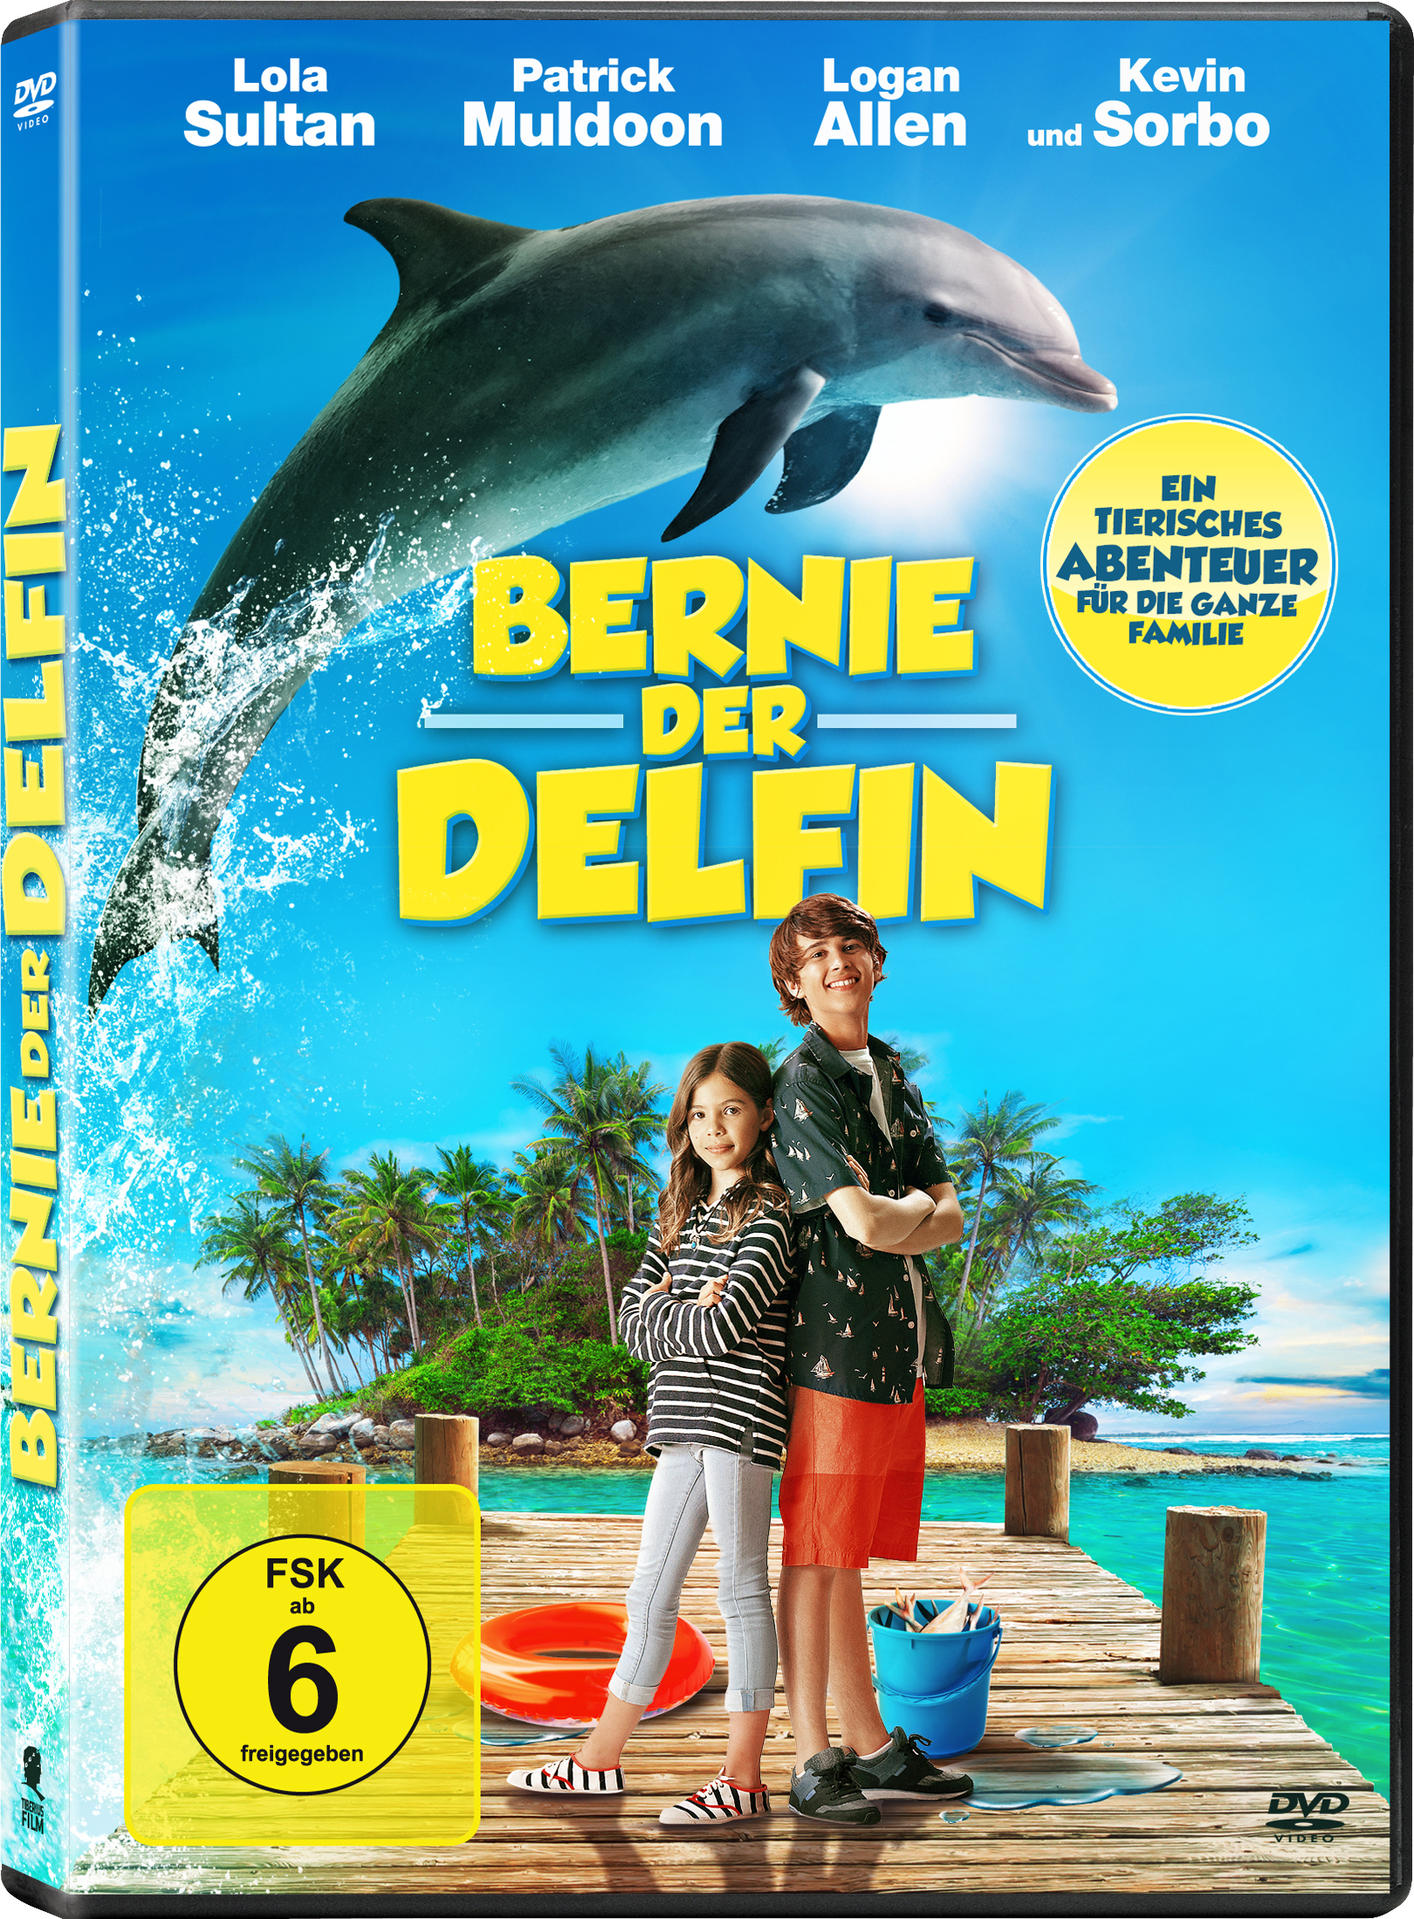 der Bernie, DVD Delfin